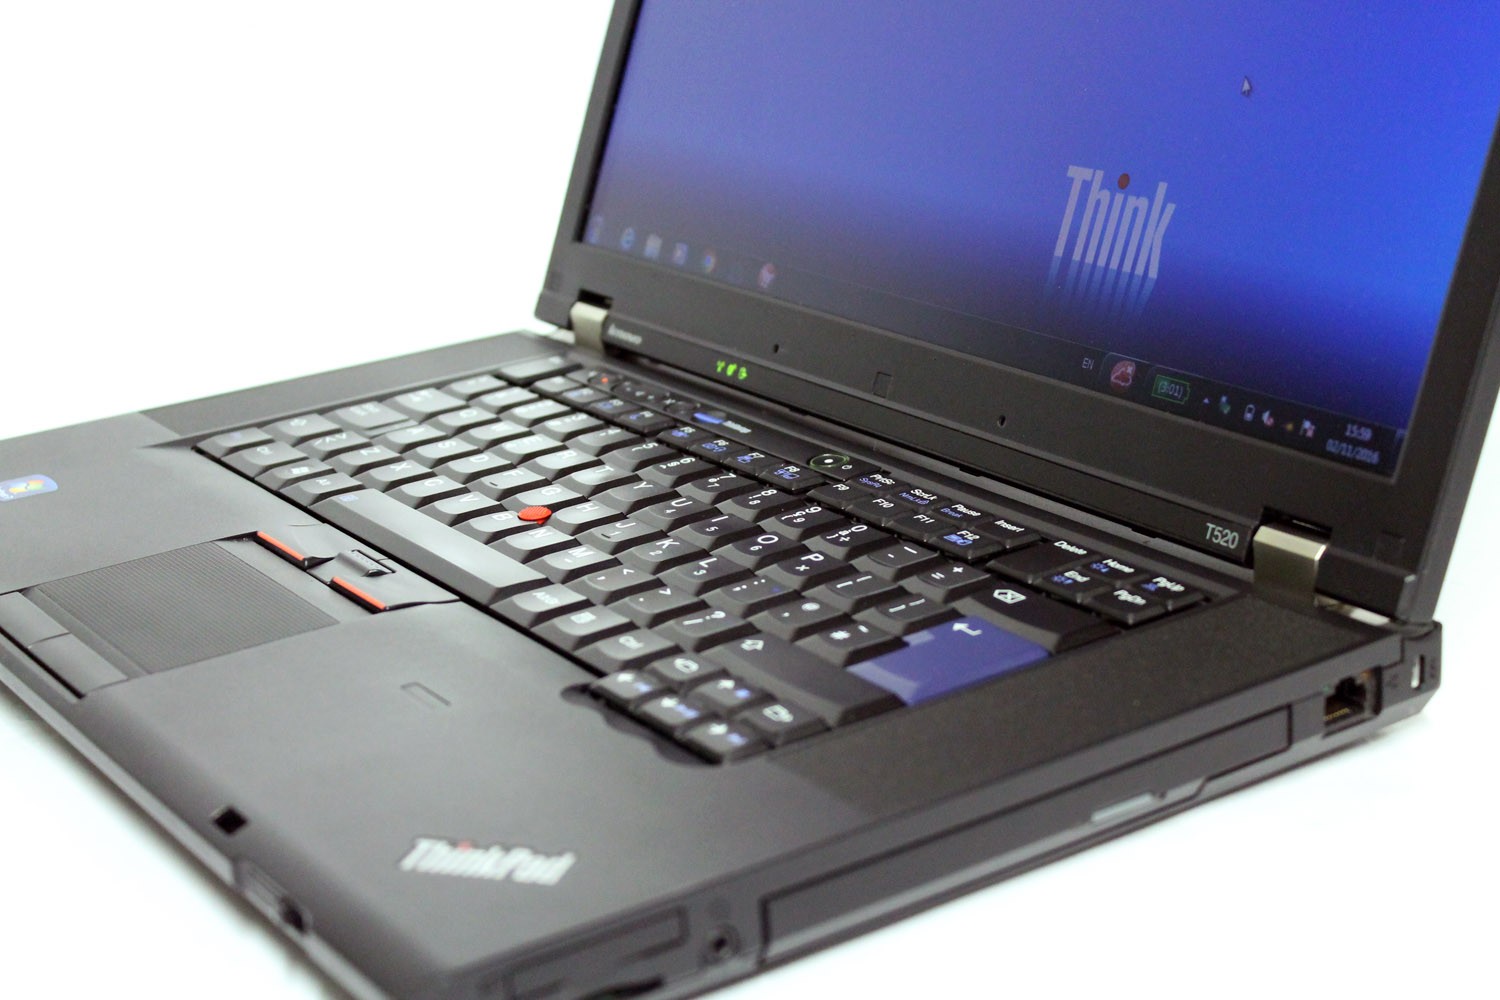 Laptop Lenovo T520 cũ giá rẻ tại Hà Nội